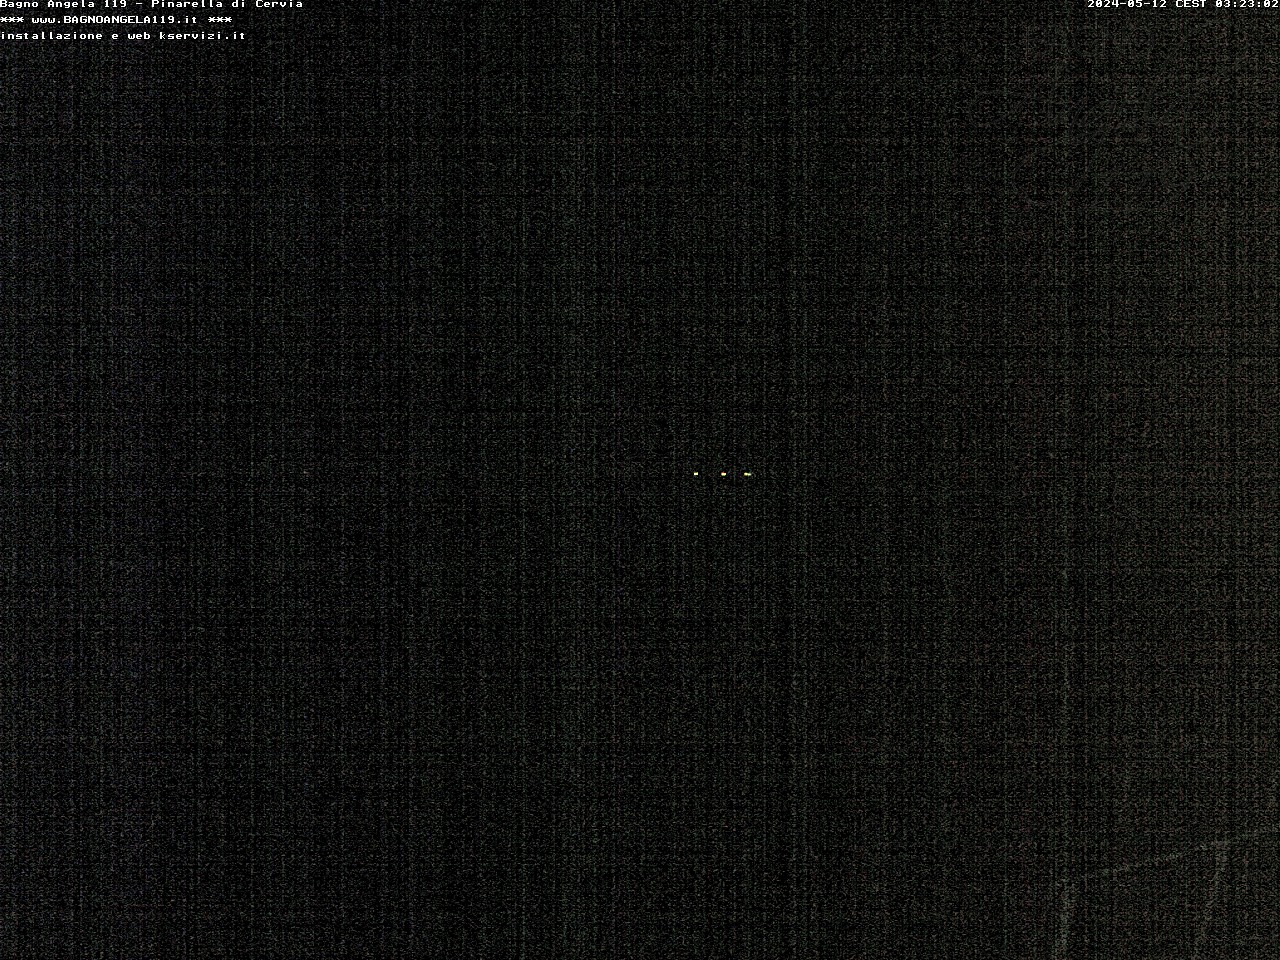 Pinarella di Cervia Mer. 03:23